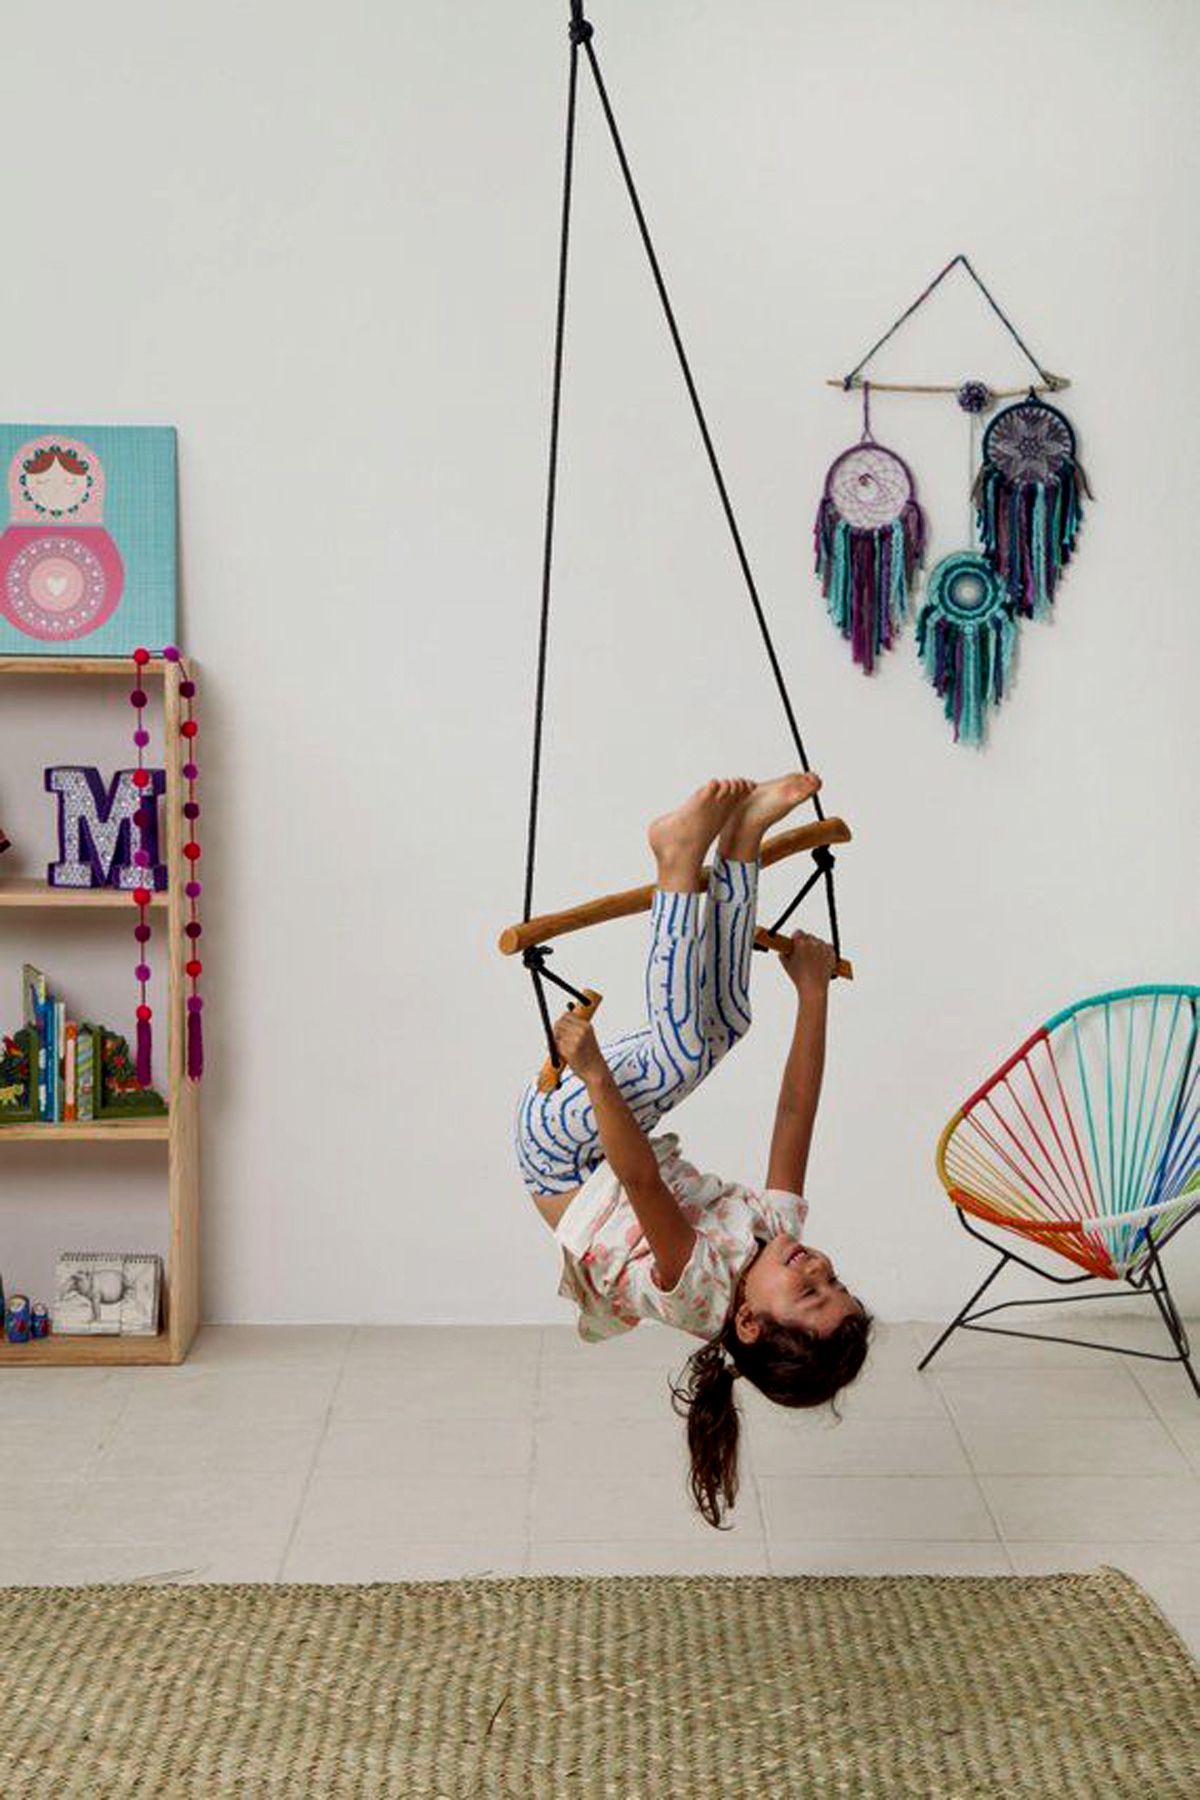 Nurnivus Trapez Ahşap Duyusal Salıncak Çocuk Egzersiz Aktivite Jimnastik Yoga Gelişim Salıncağı